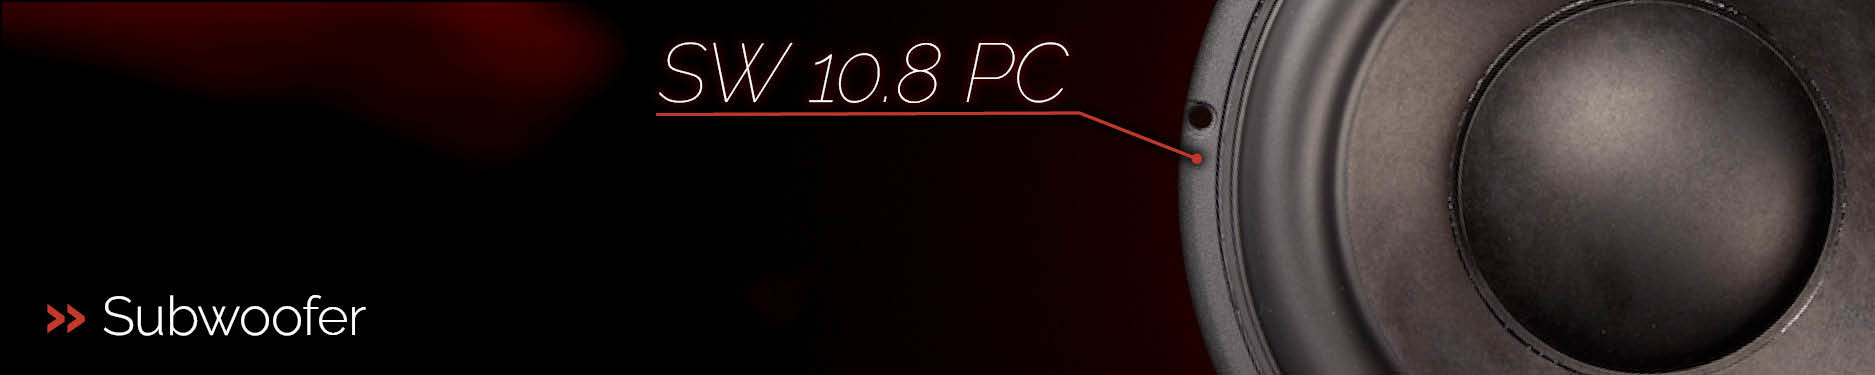 SW10.8 PC